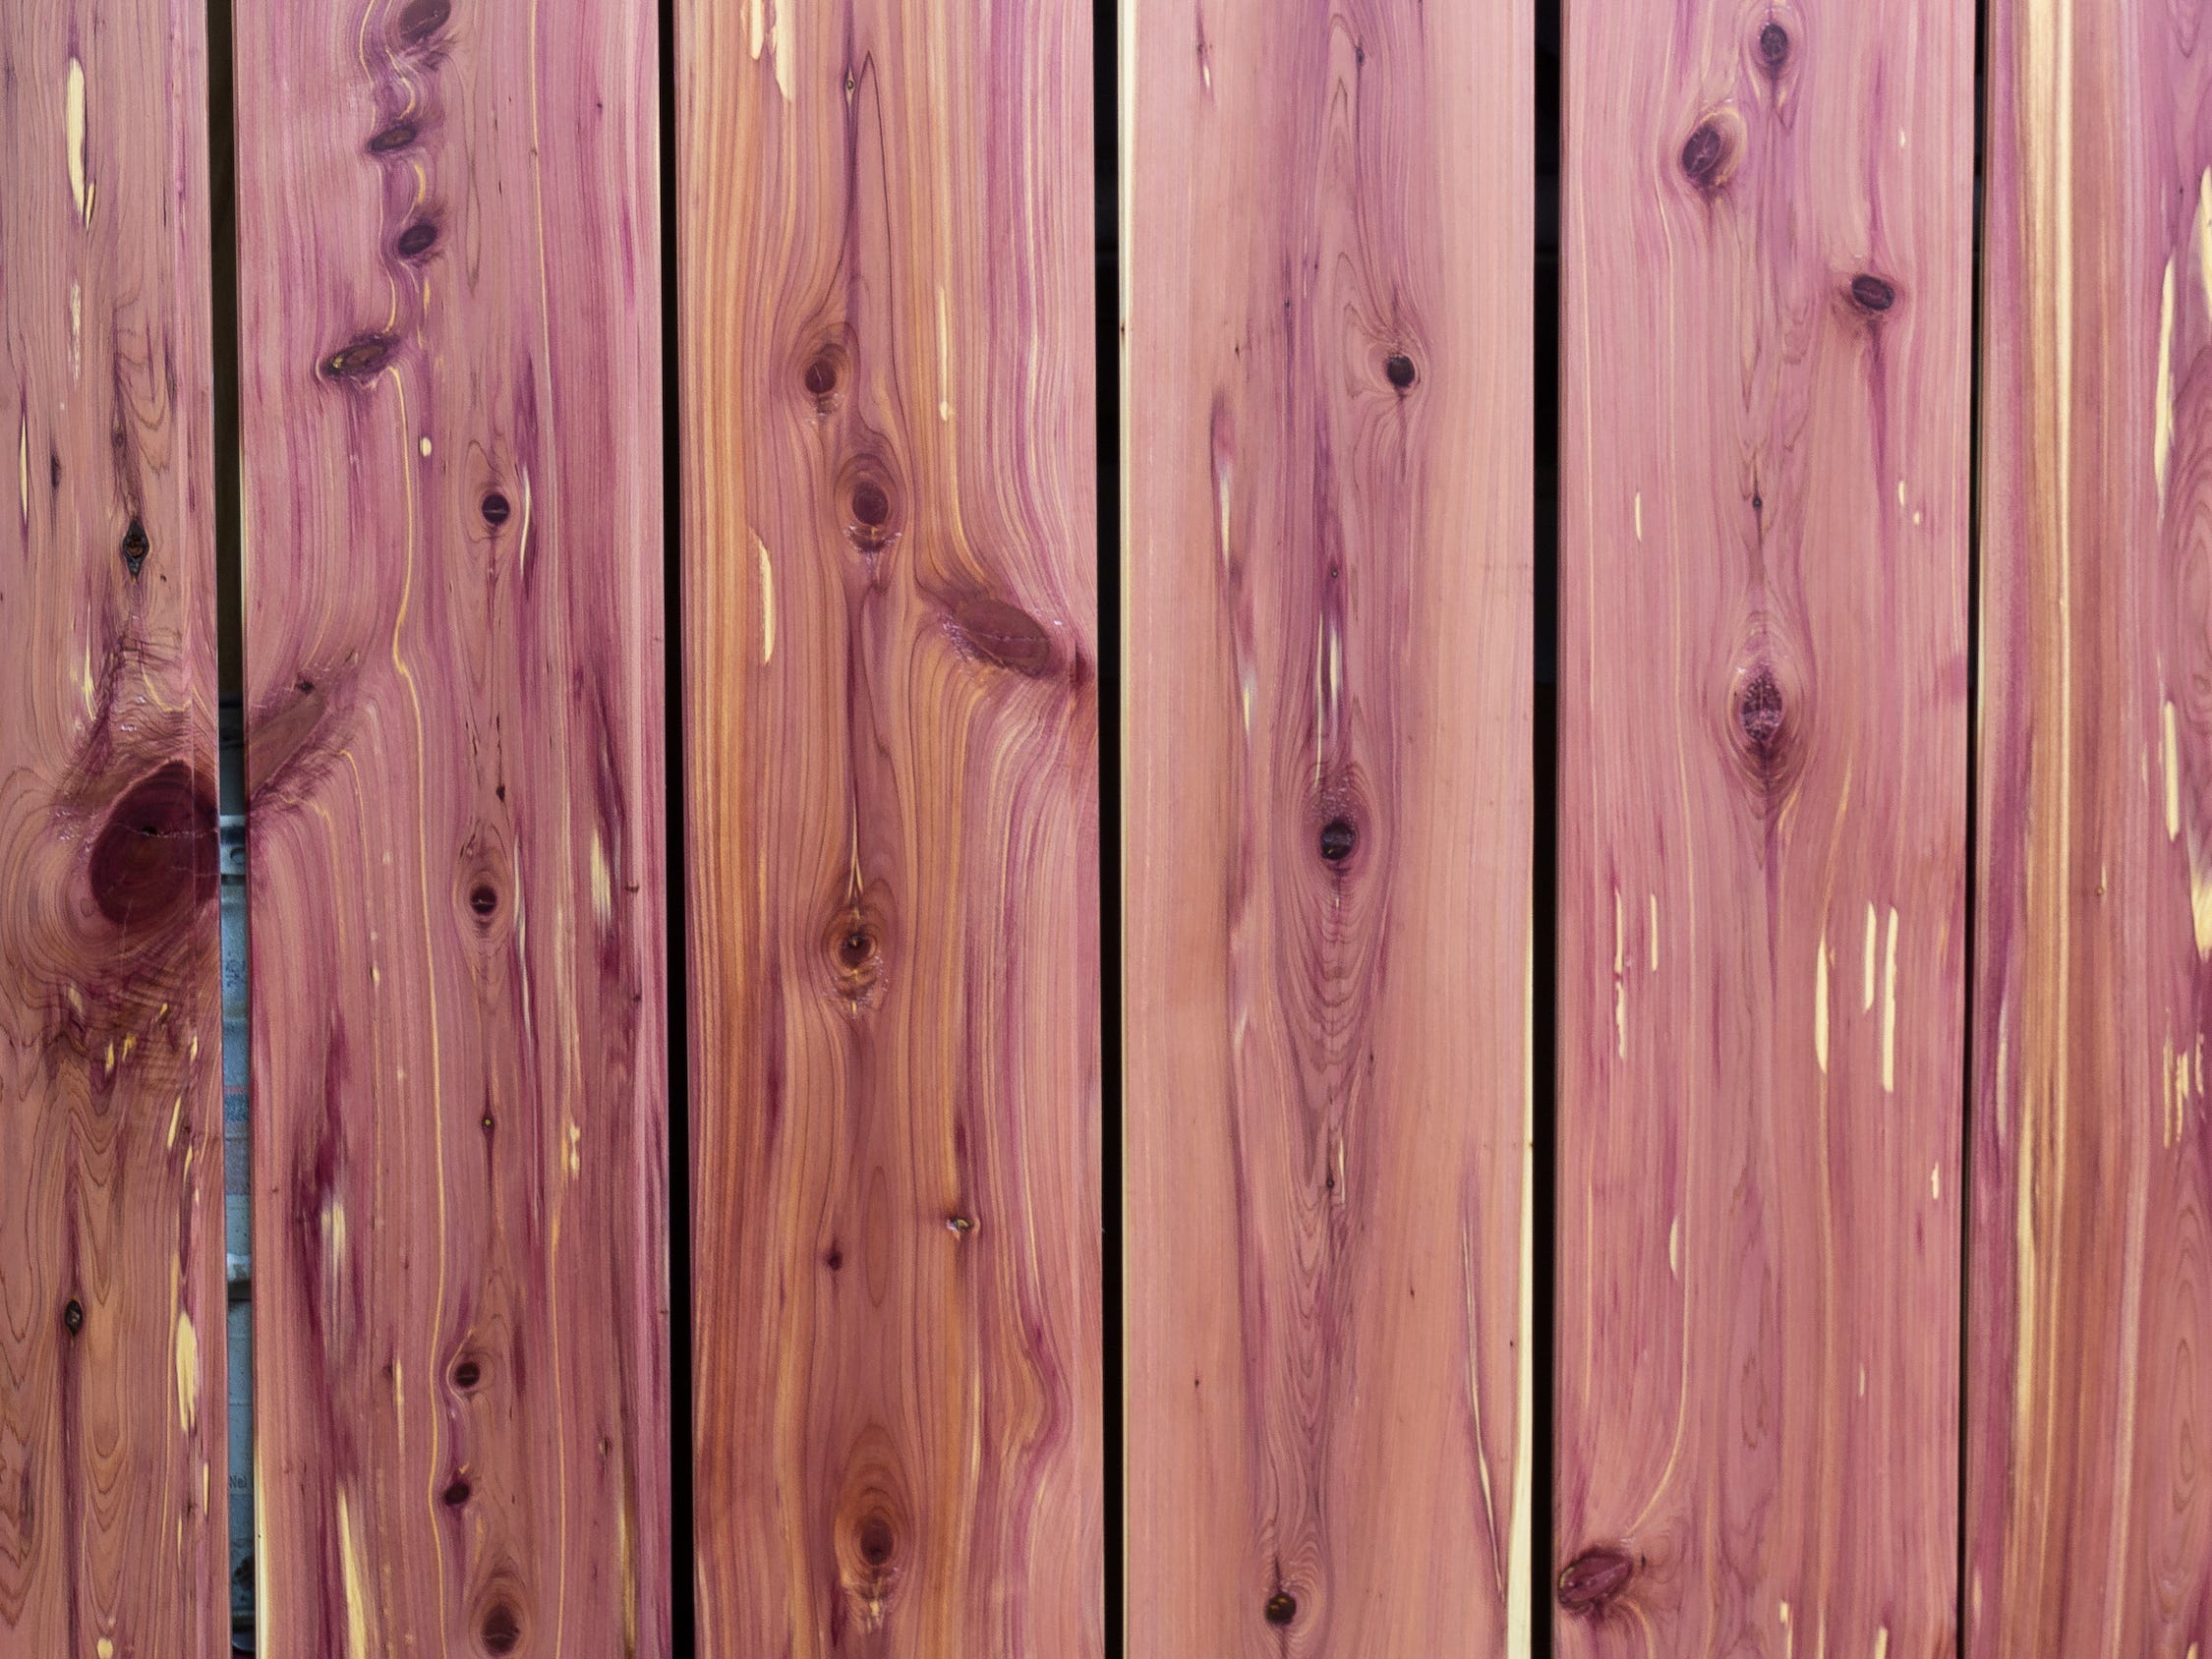 Reihen von Zedernholzplanken.  Das Holz ist leicht rosa.